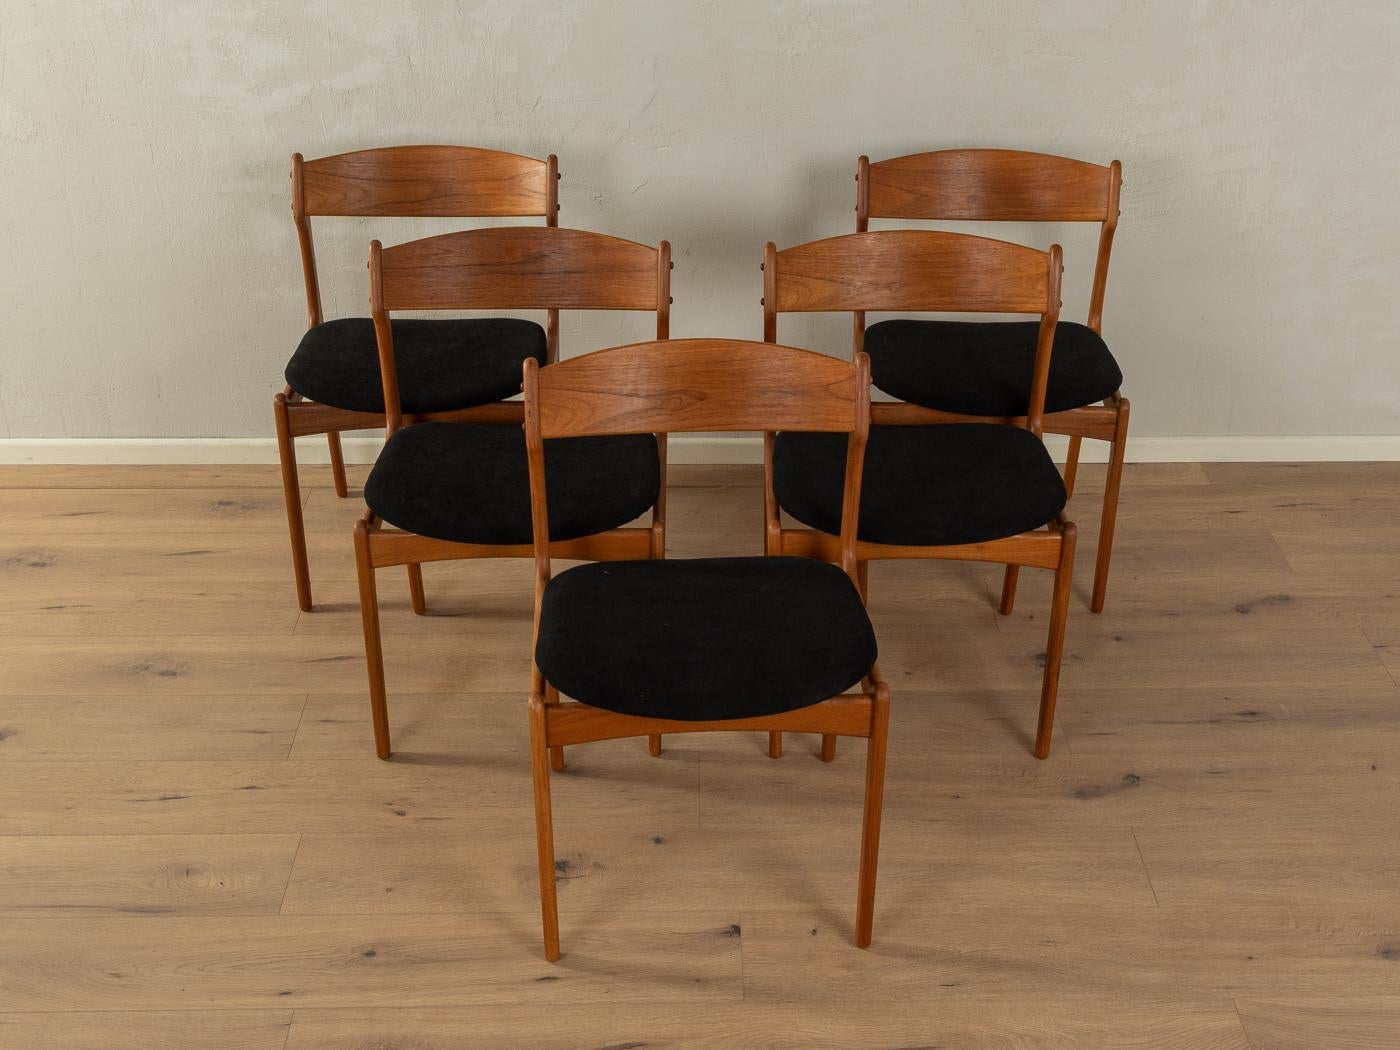 Klassische Esszimmerstühle mit einem Gestell aus Teakholz. Entworfen im Jahr 1954. Die Stühle wurden mit einem hochwertigen Stoff in Schwarz neu gepolstert. Das Angebot umfasst fünf Stühle.

Qualitätsmerkmale:
    vollendetes Design: perfekte